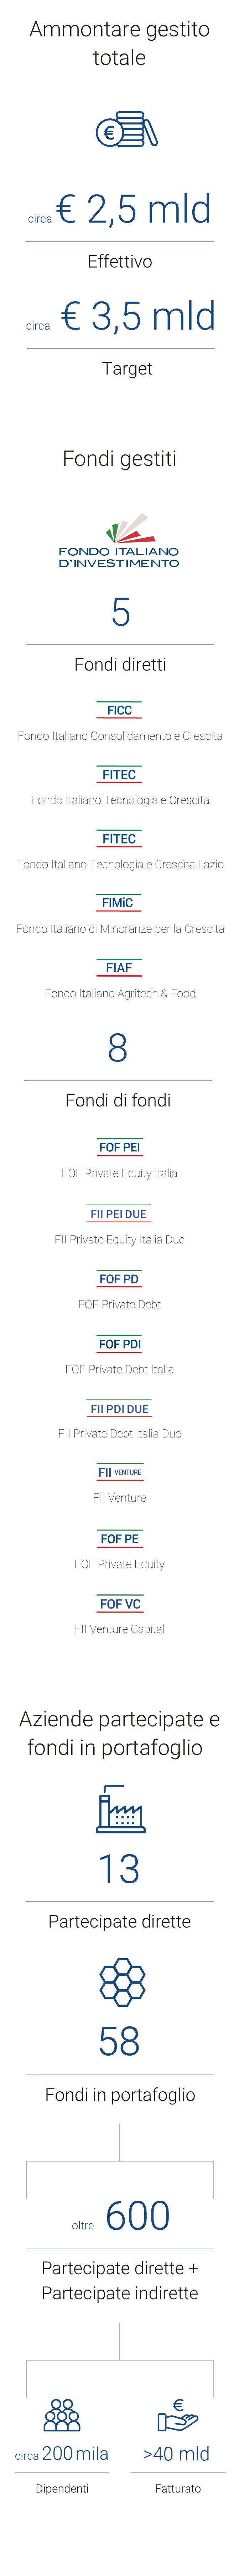 Gli strumenti di Fondo Italiano d’Investimento